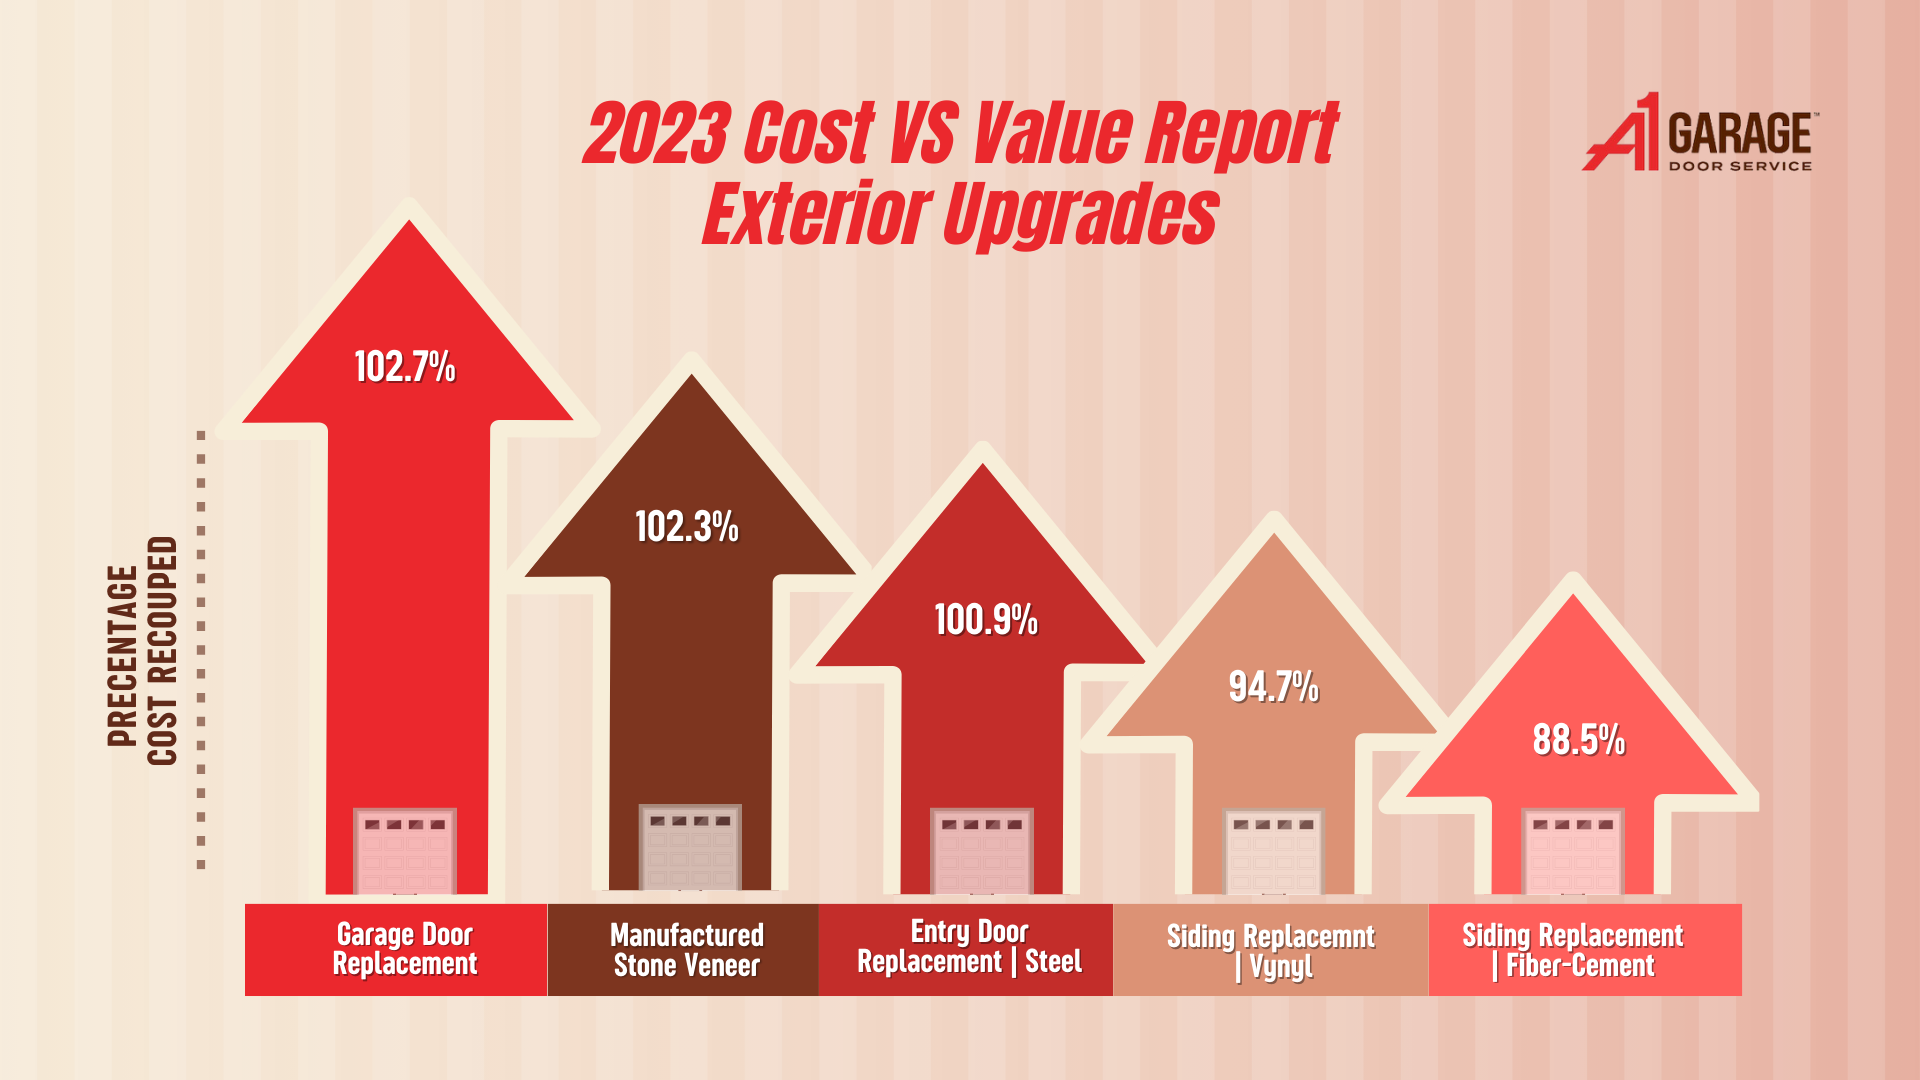 2023 Cost VS Value Report Exterior Upgrades